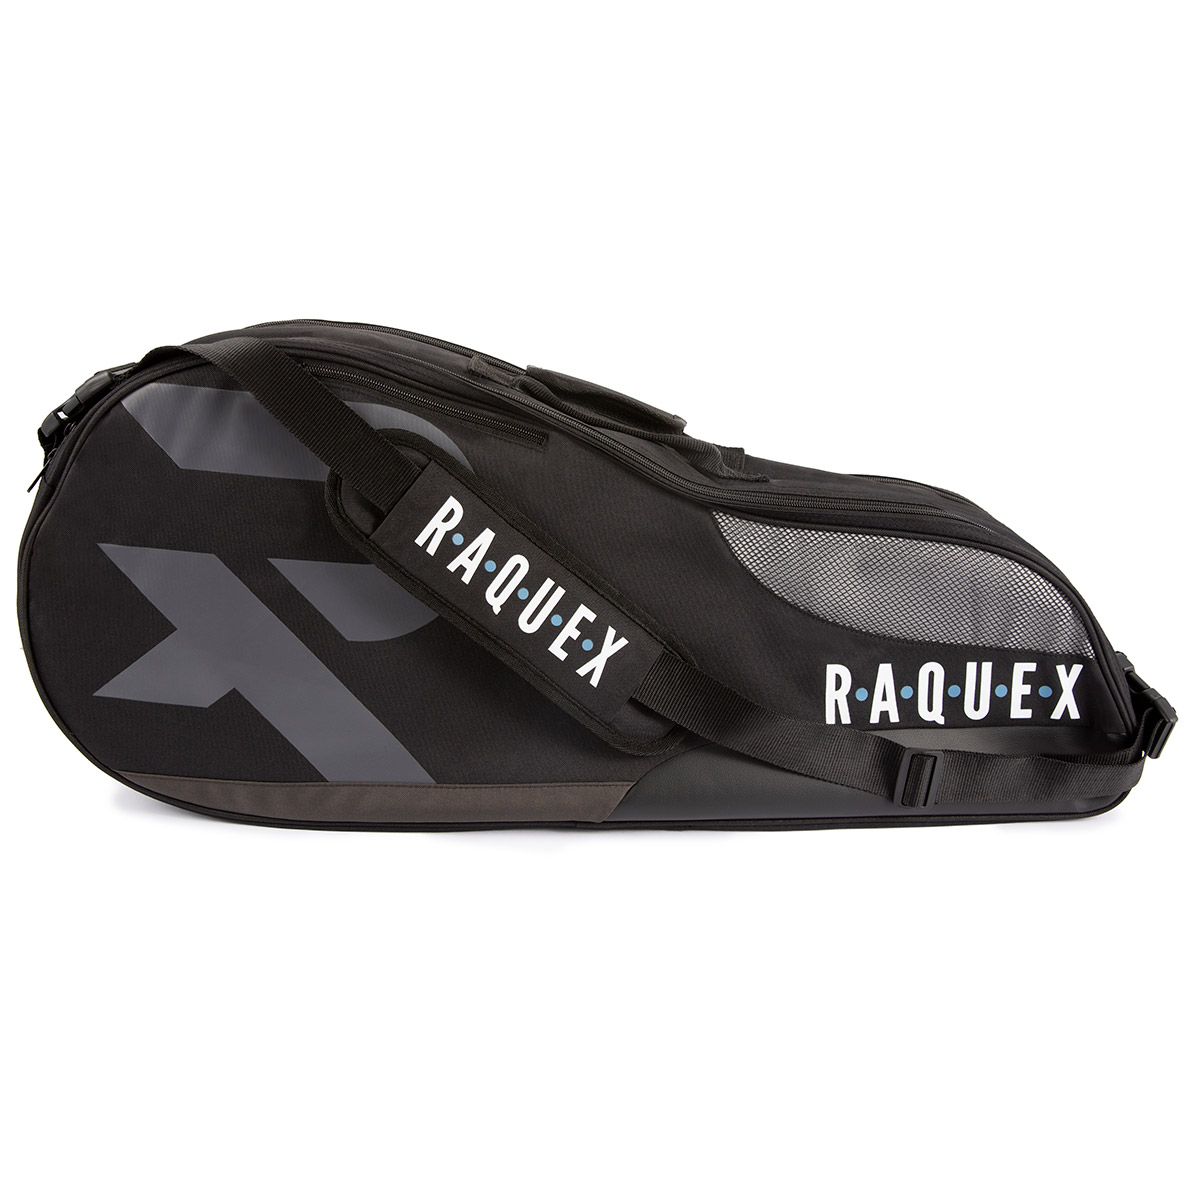 Raquex racquet bag in black